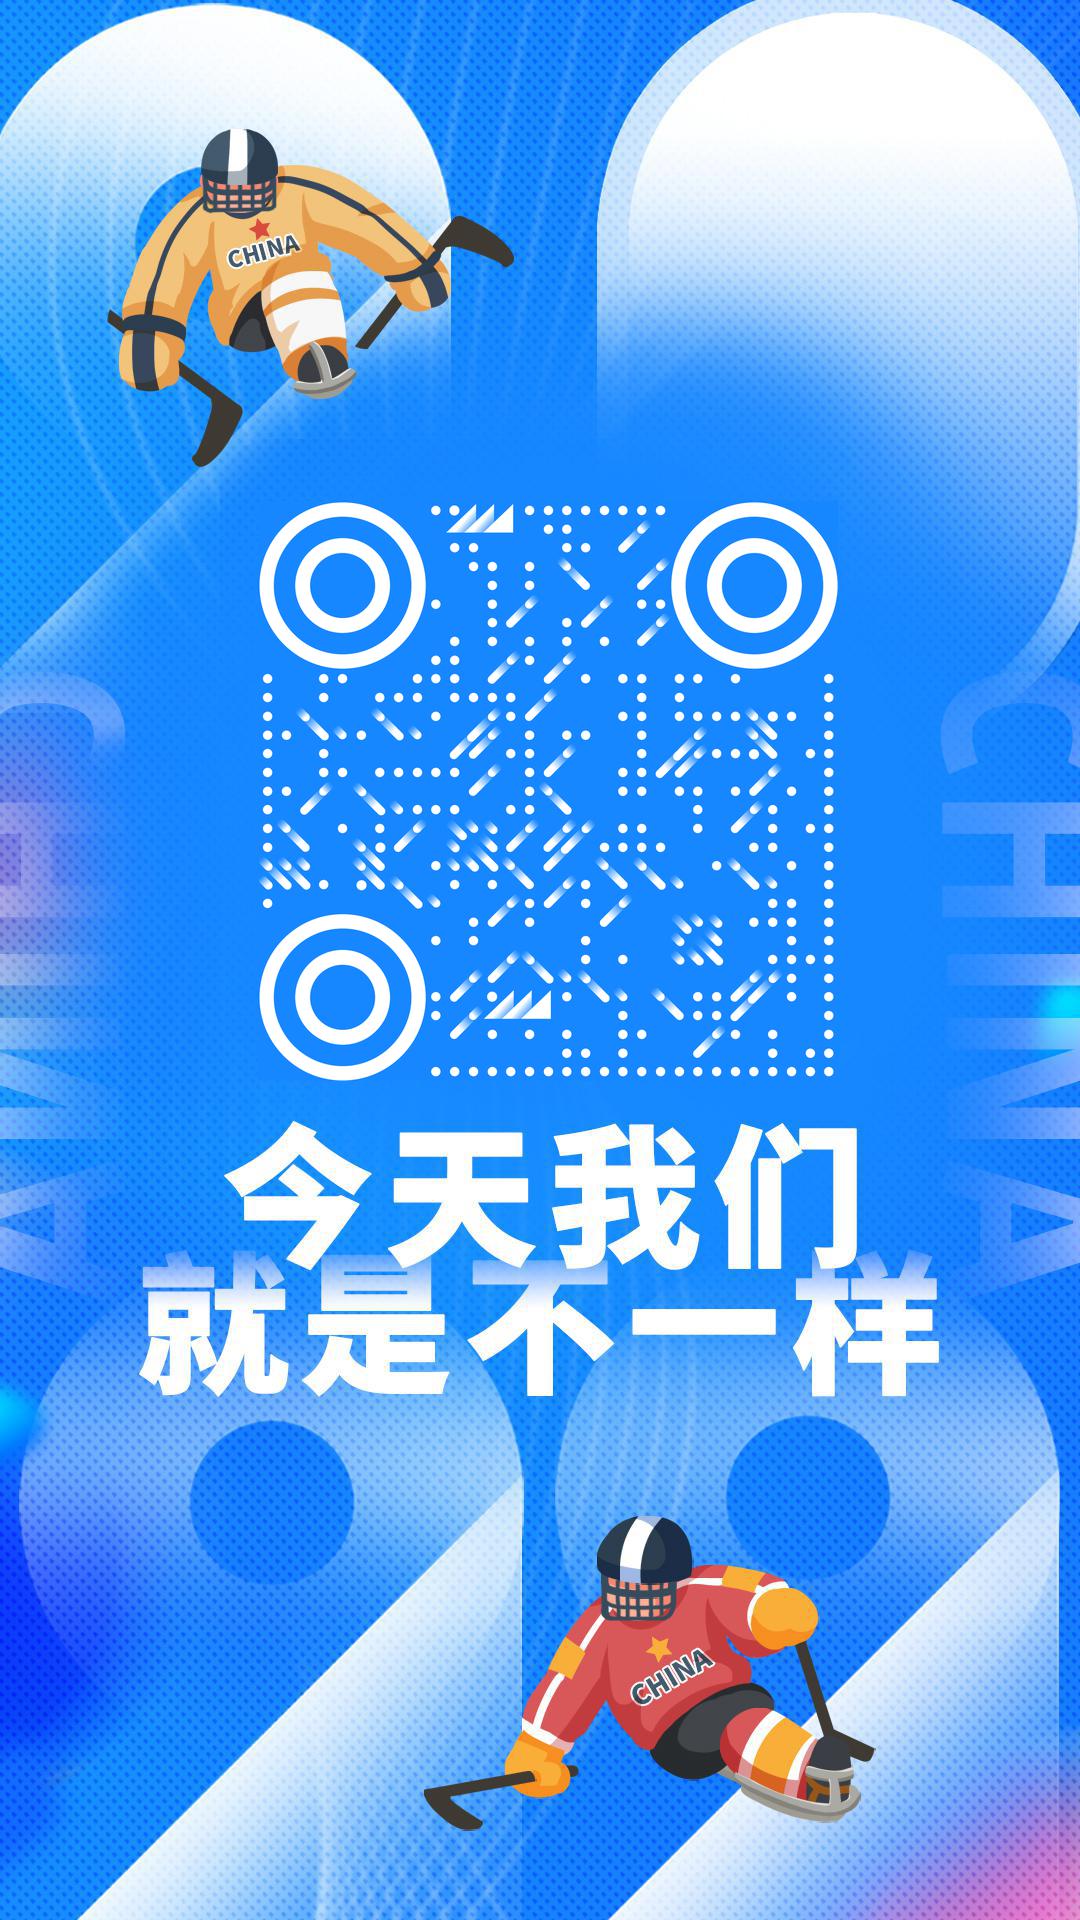 2022北京冬季残奥会我们就是不一样二维码生成器-平面静态-手机海报